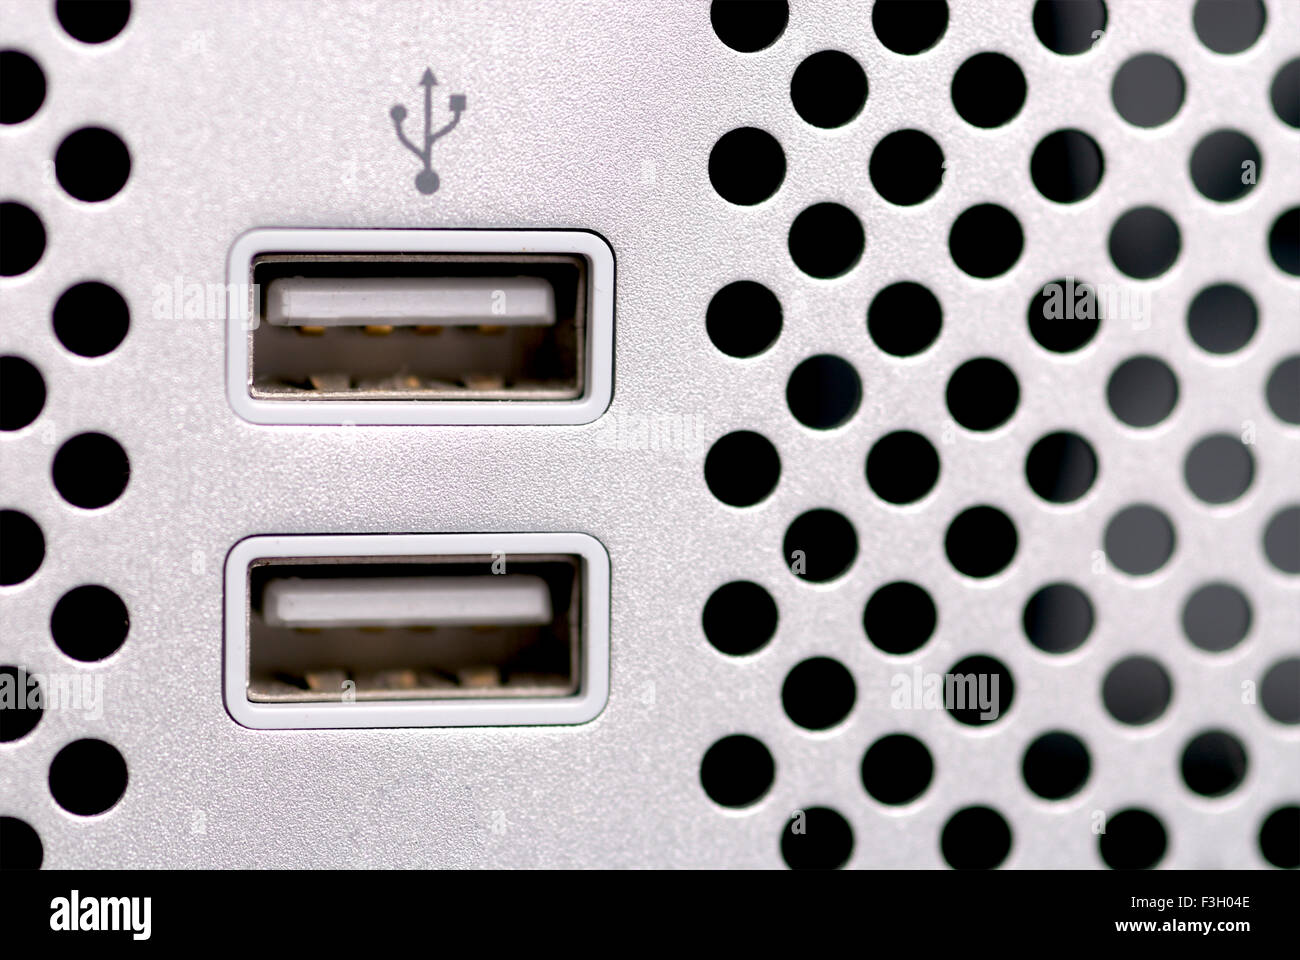 Usb universal serial bus ports fotografías e imágenes de alta resolución -  Alamy